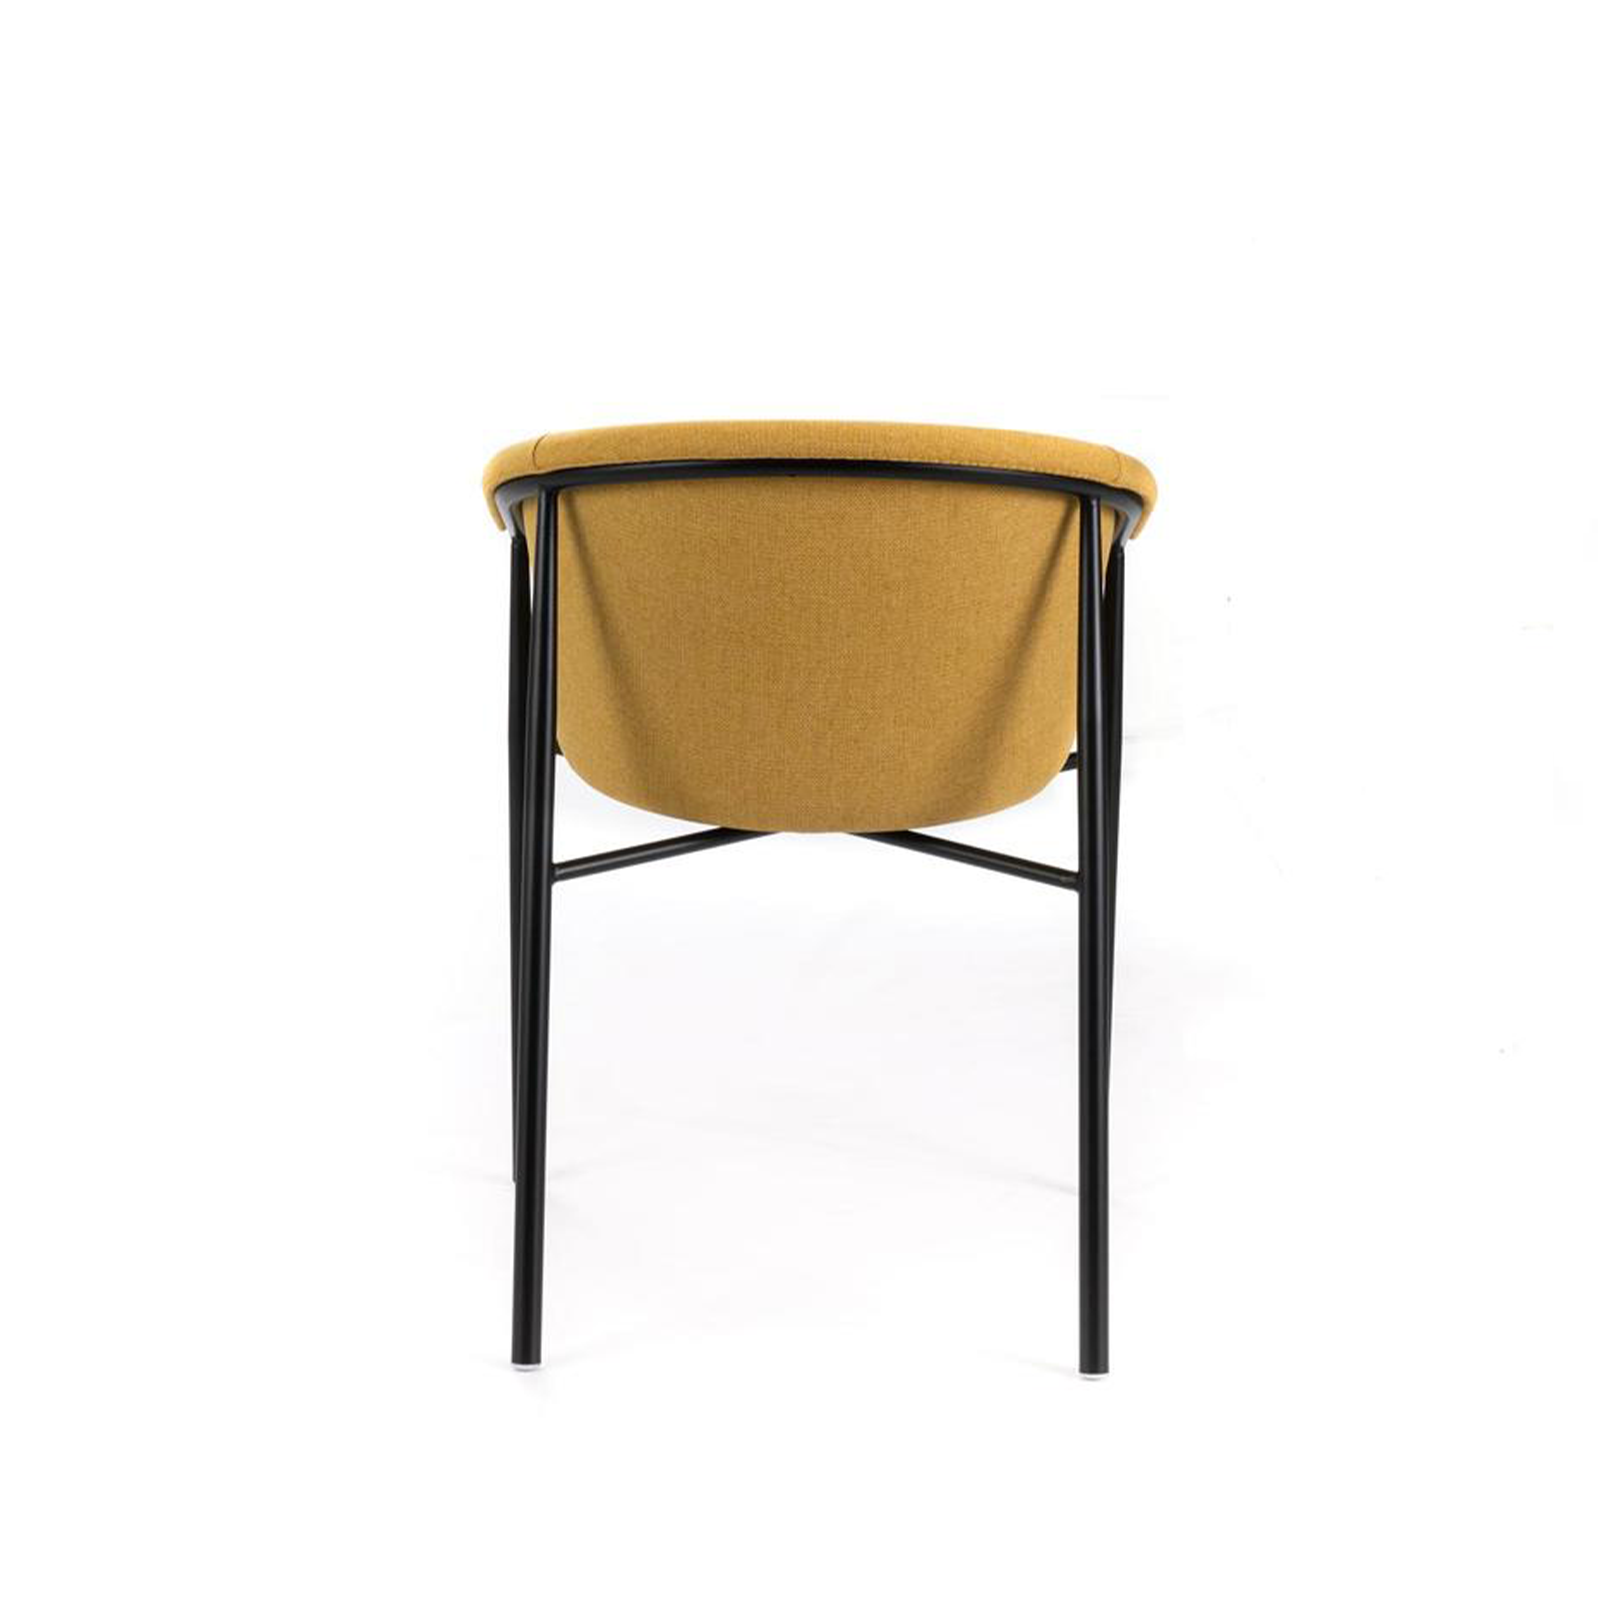 Chaise en tissu "Nari", élégant fauteuil moderne 56x58 79h cm